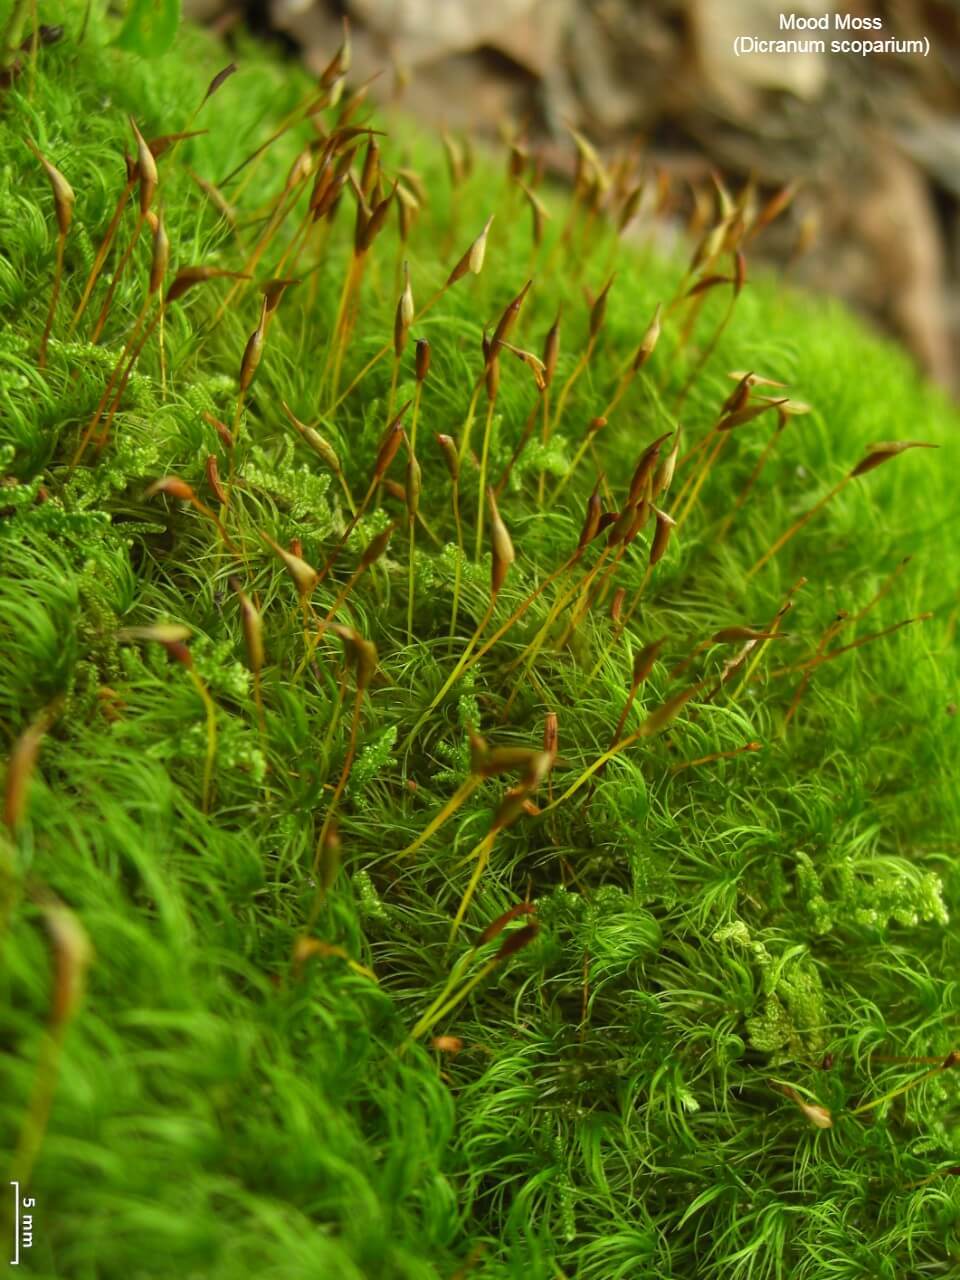 Mood Moss (Dicranum scoparium)